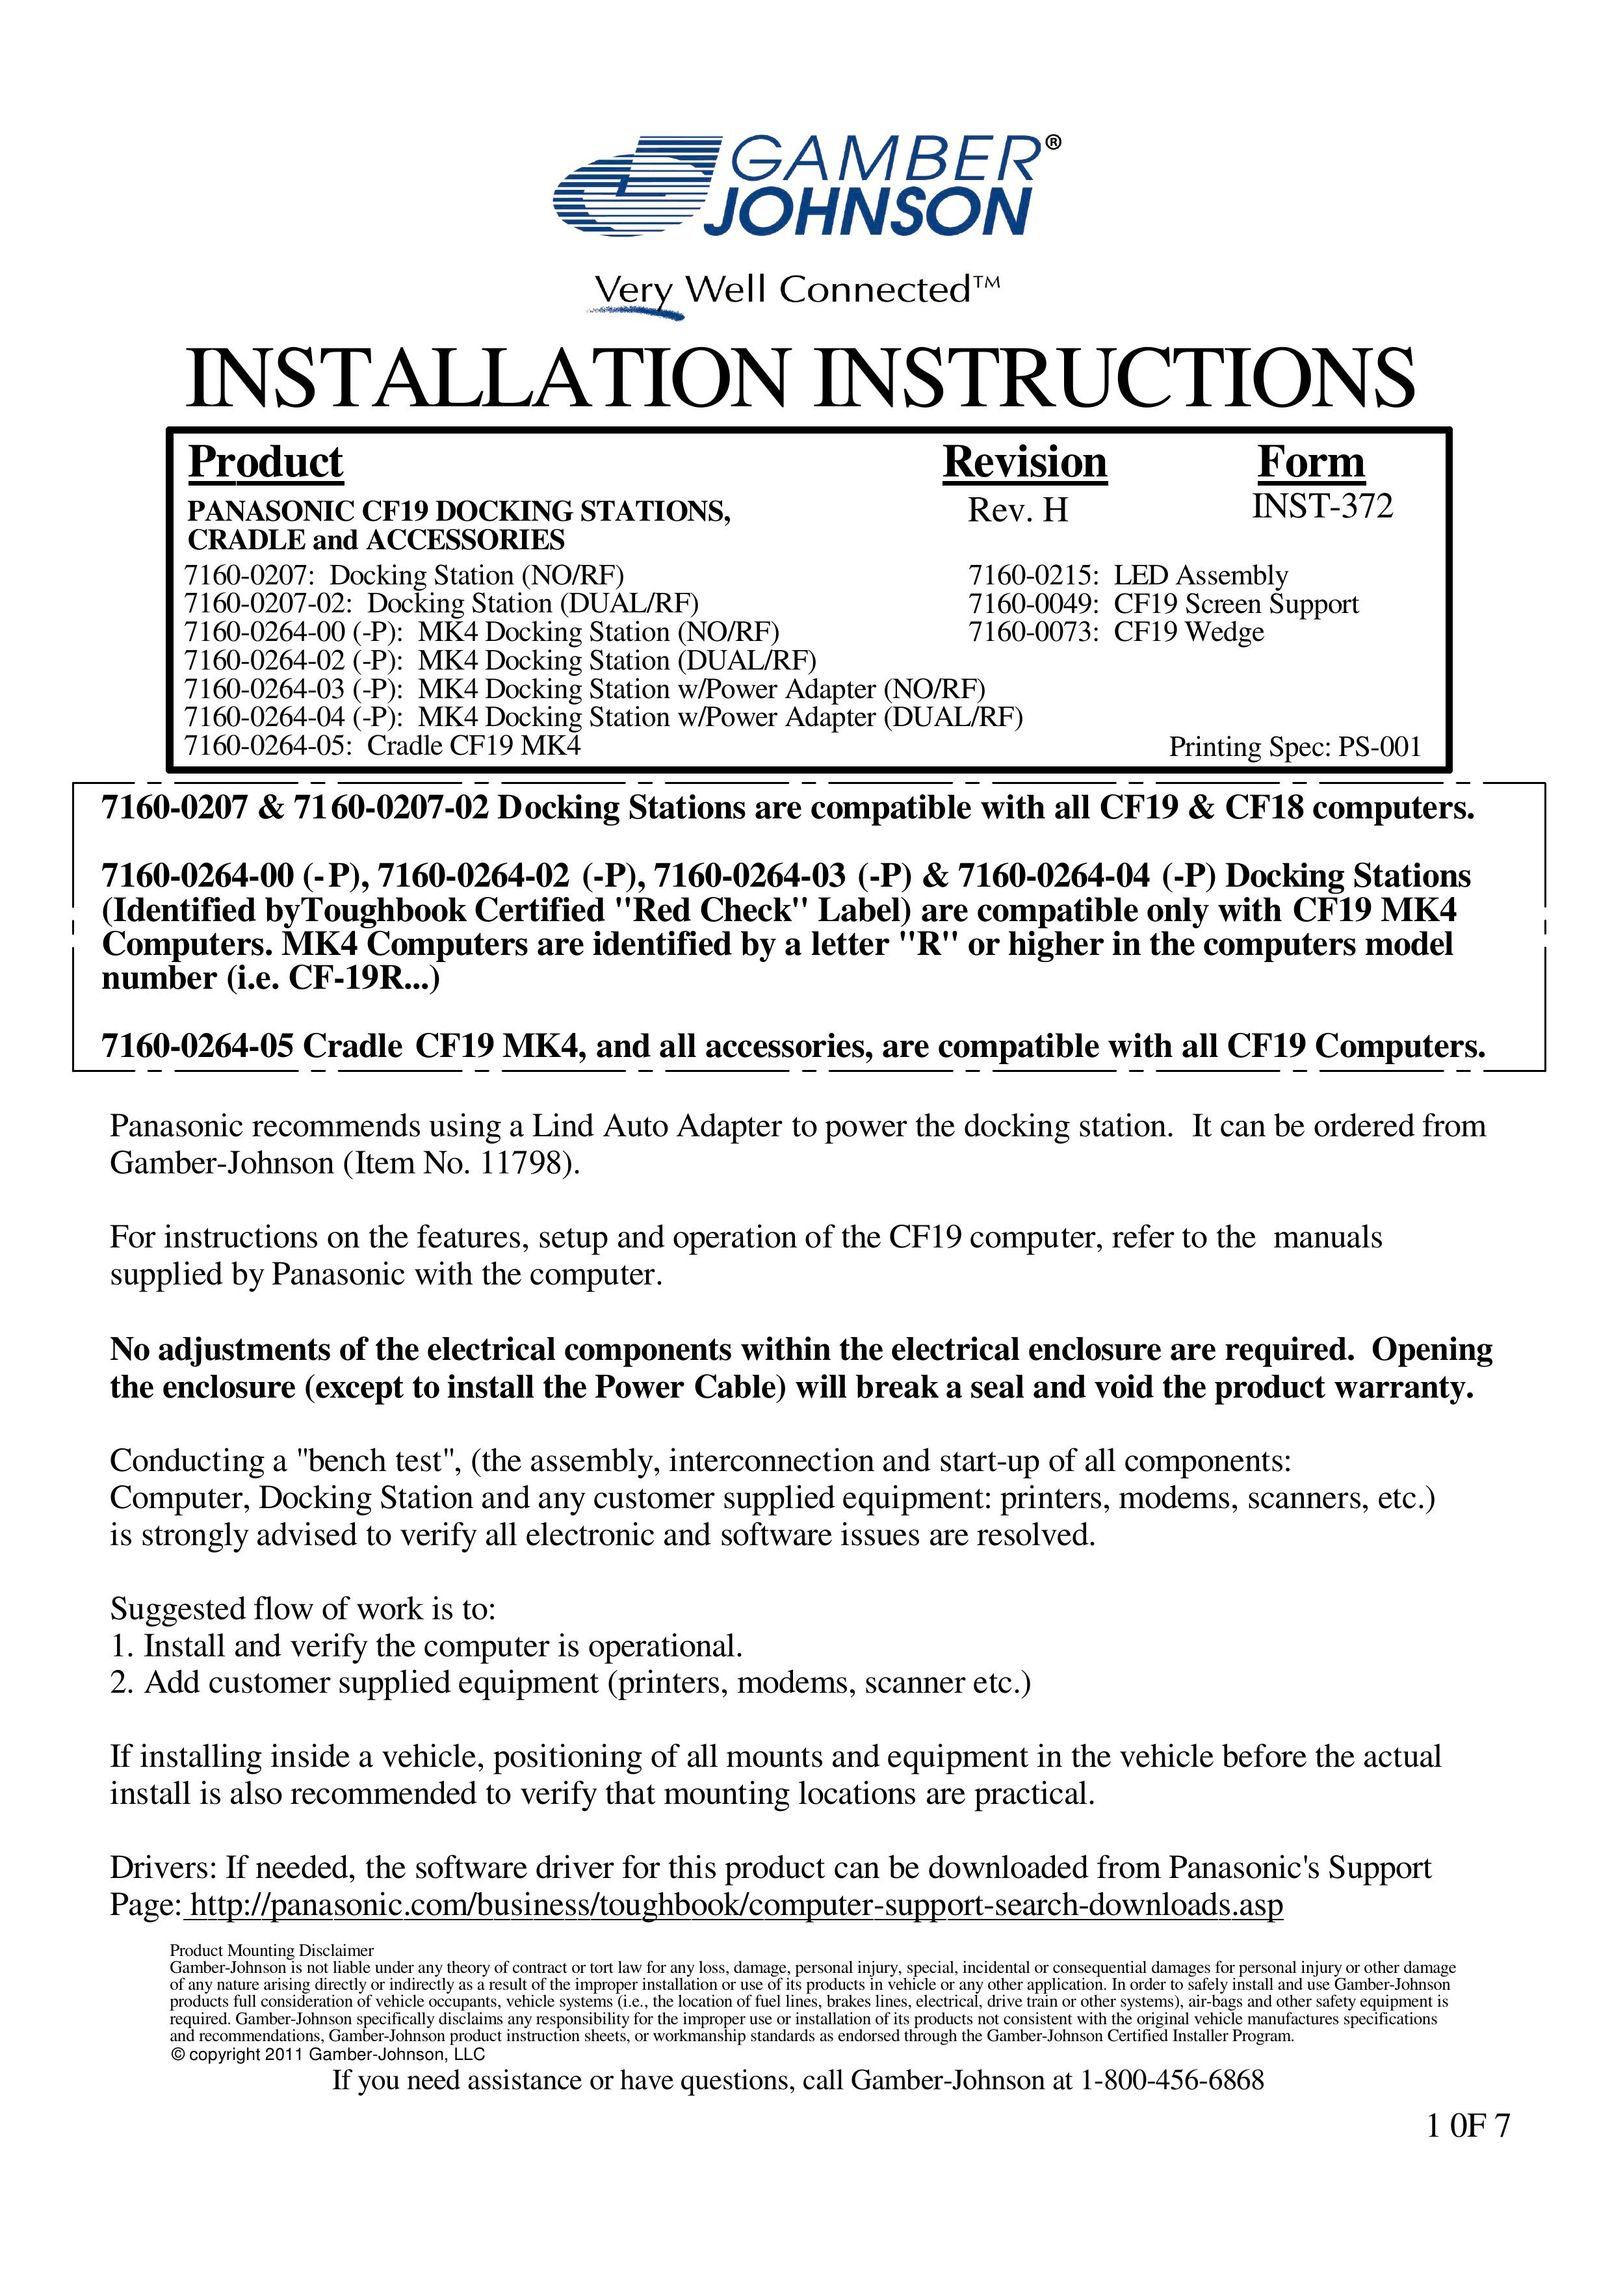 Gamber Johnson 7160-0264-00 Laptop Docking Station User Manual